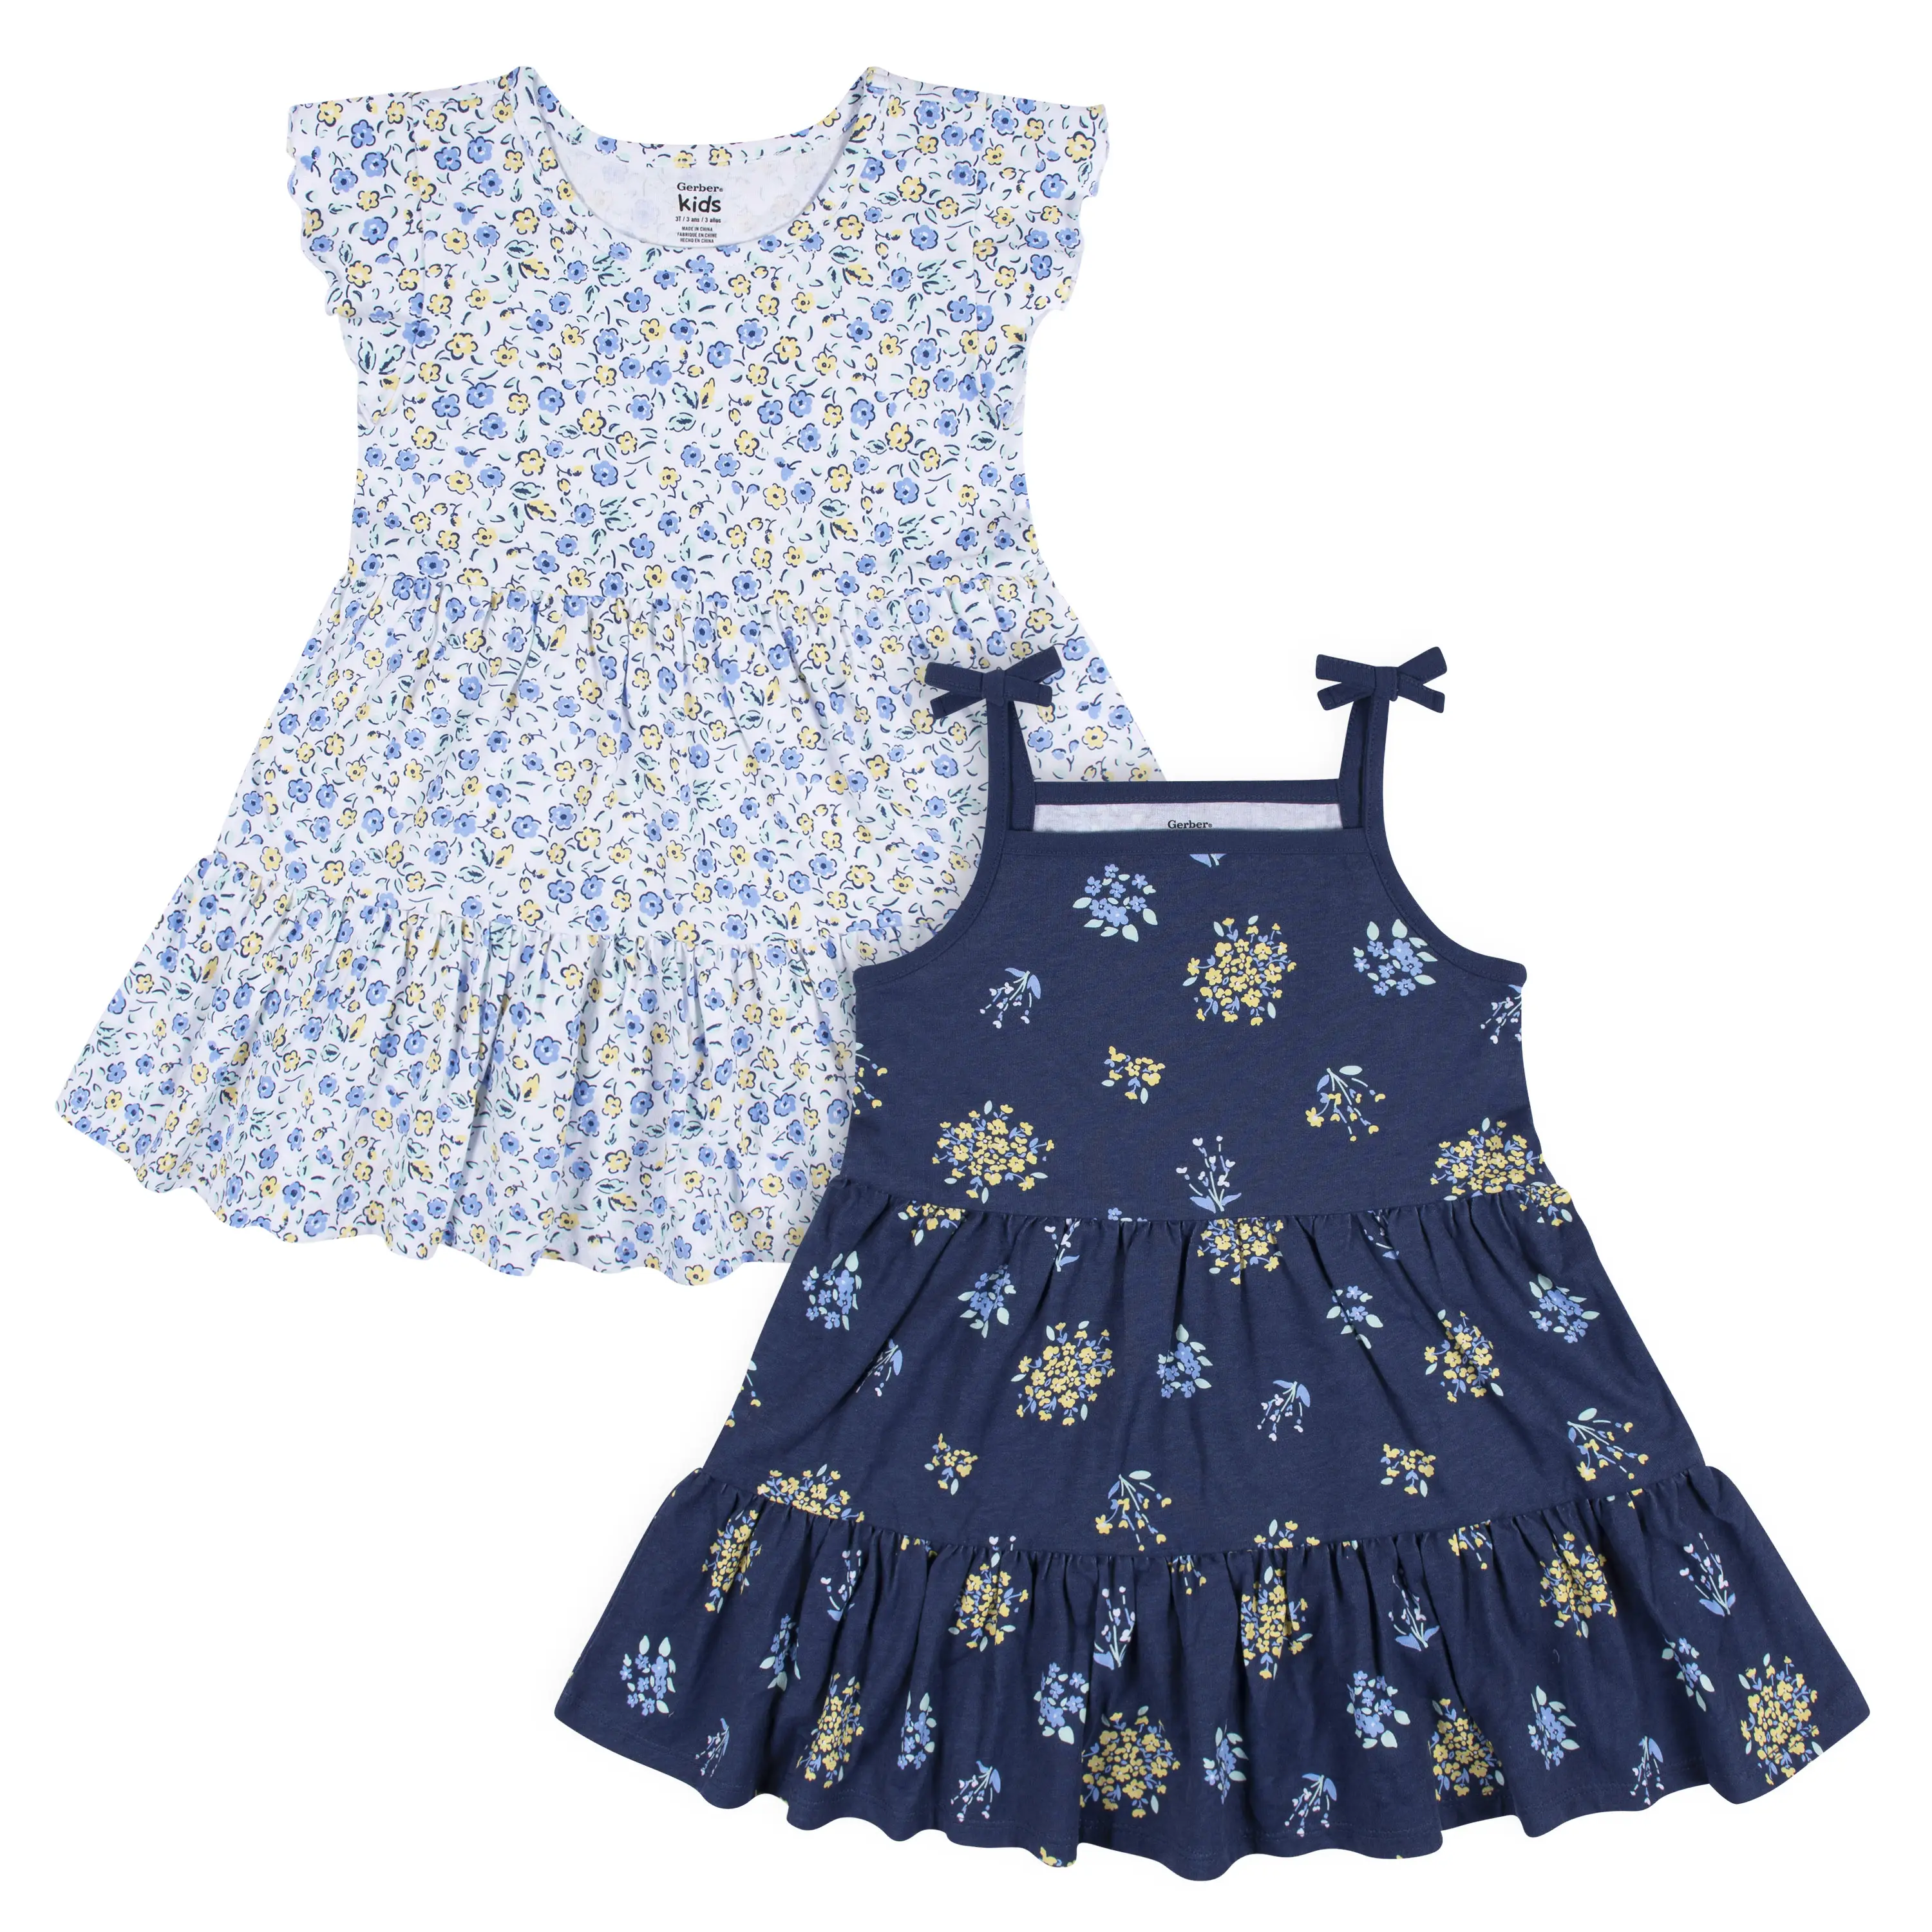 Gerber Kids 2-Pack Infant & Toddler Girls Blue Floral Knit Dresses